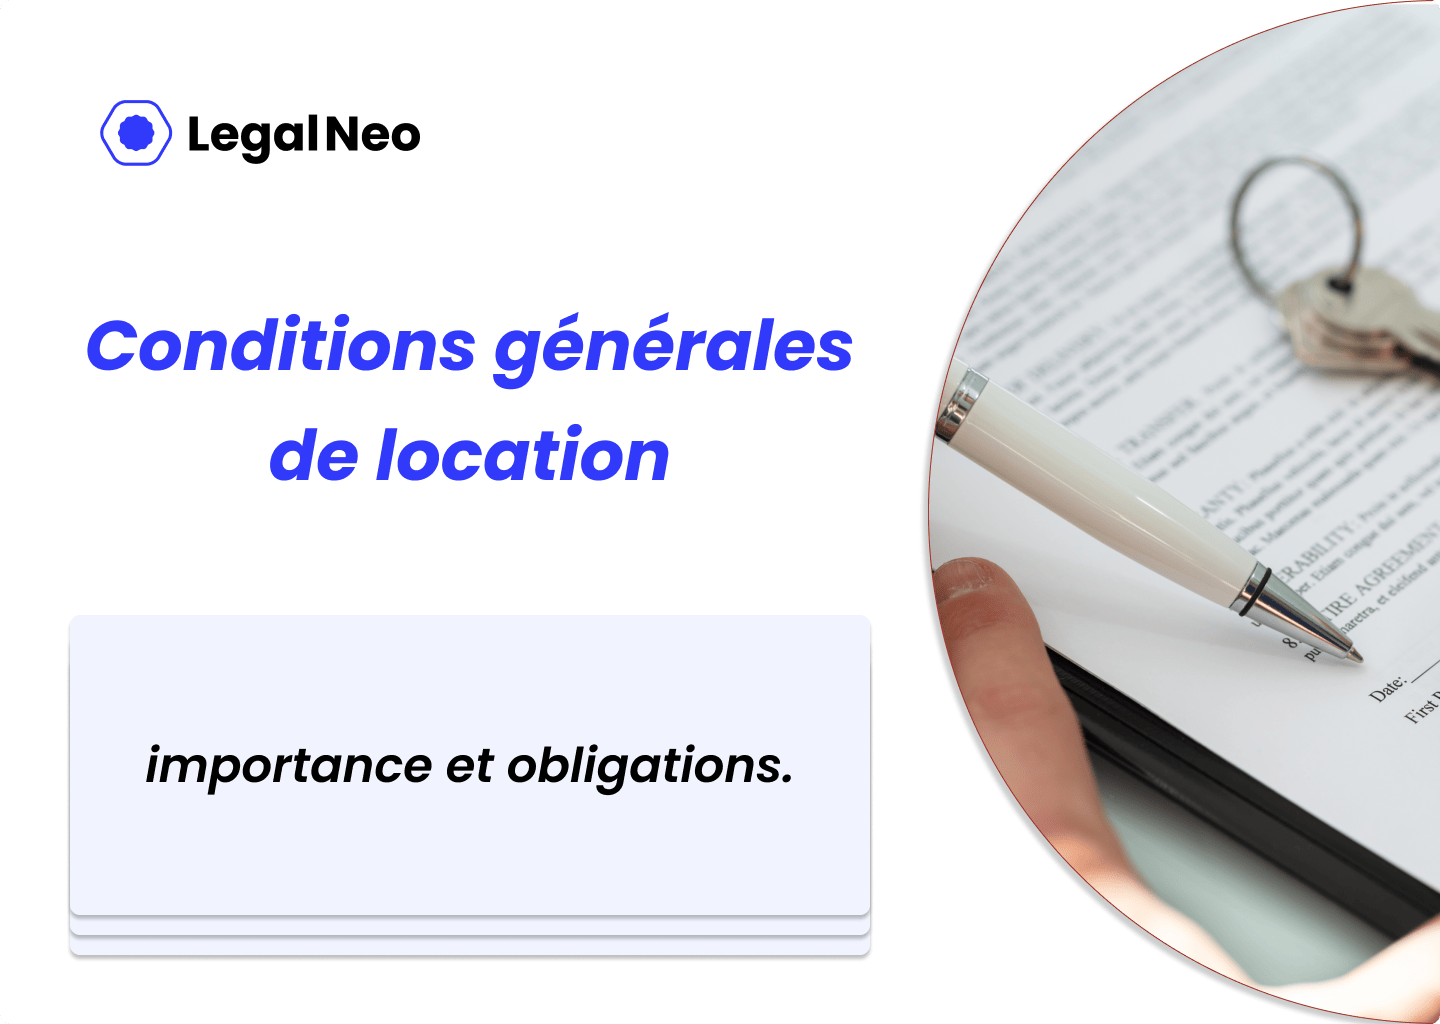 Conditions générales de location : importance et obligations